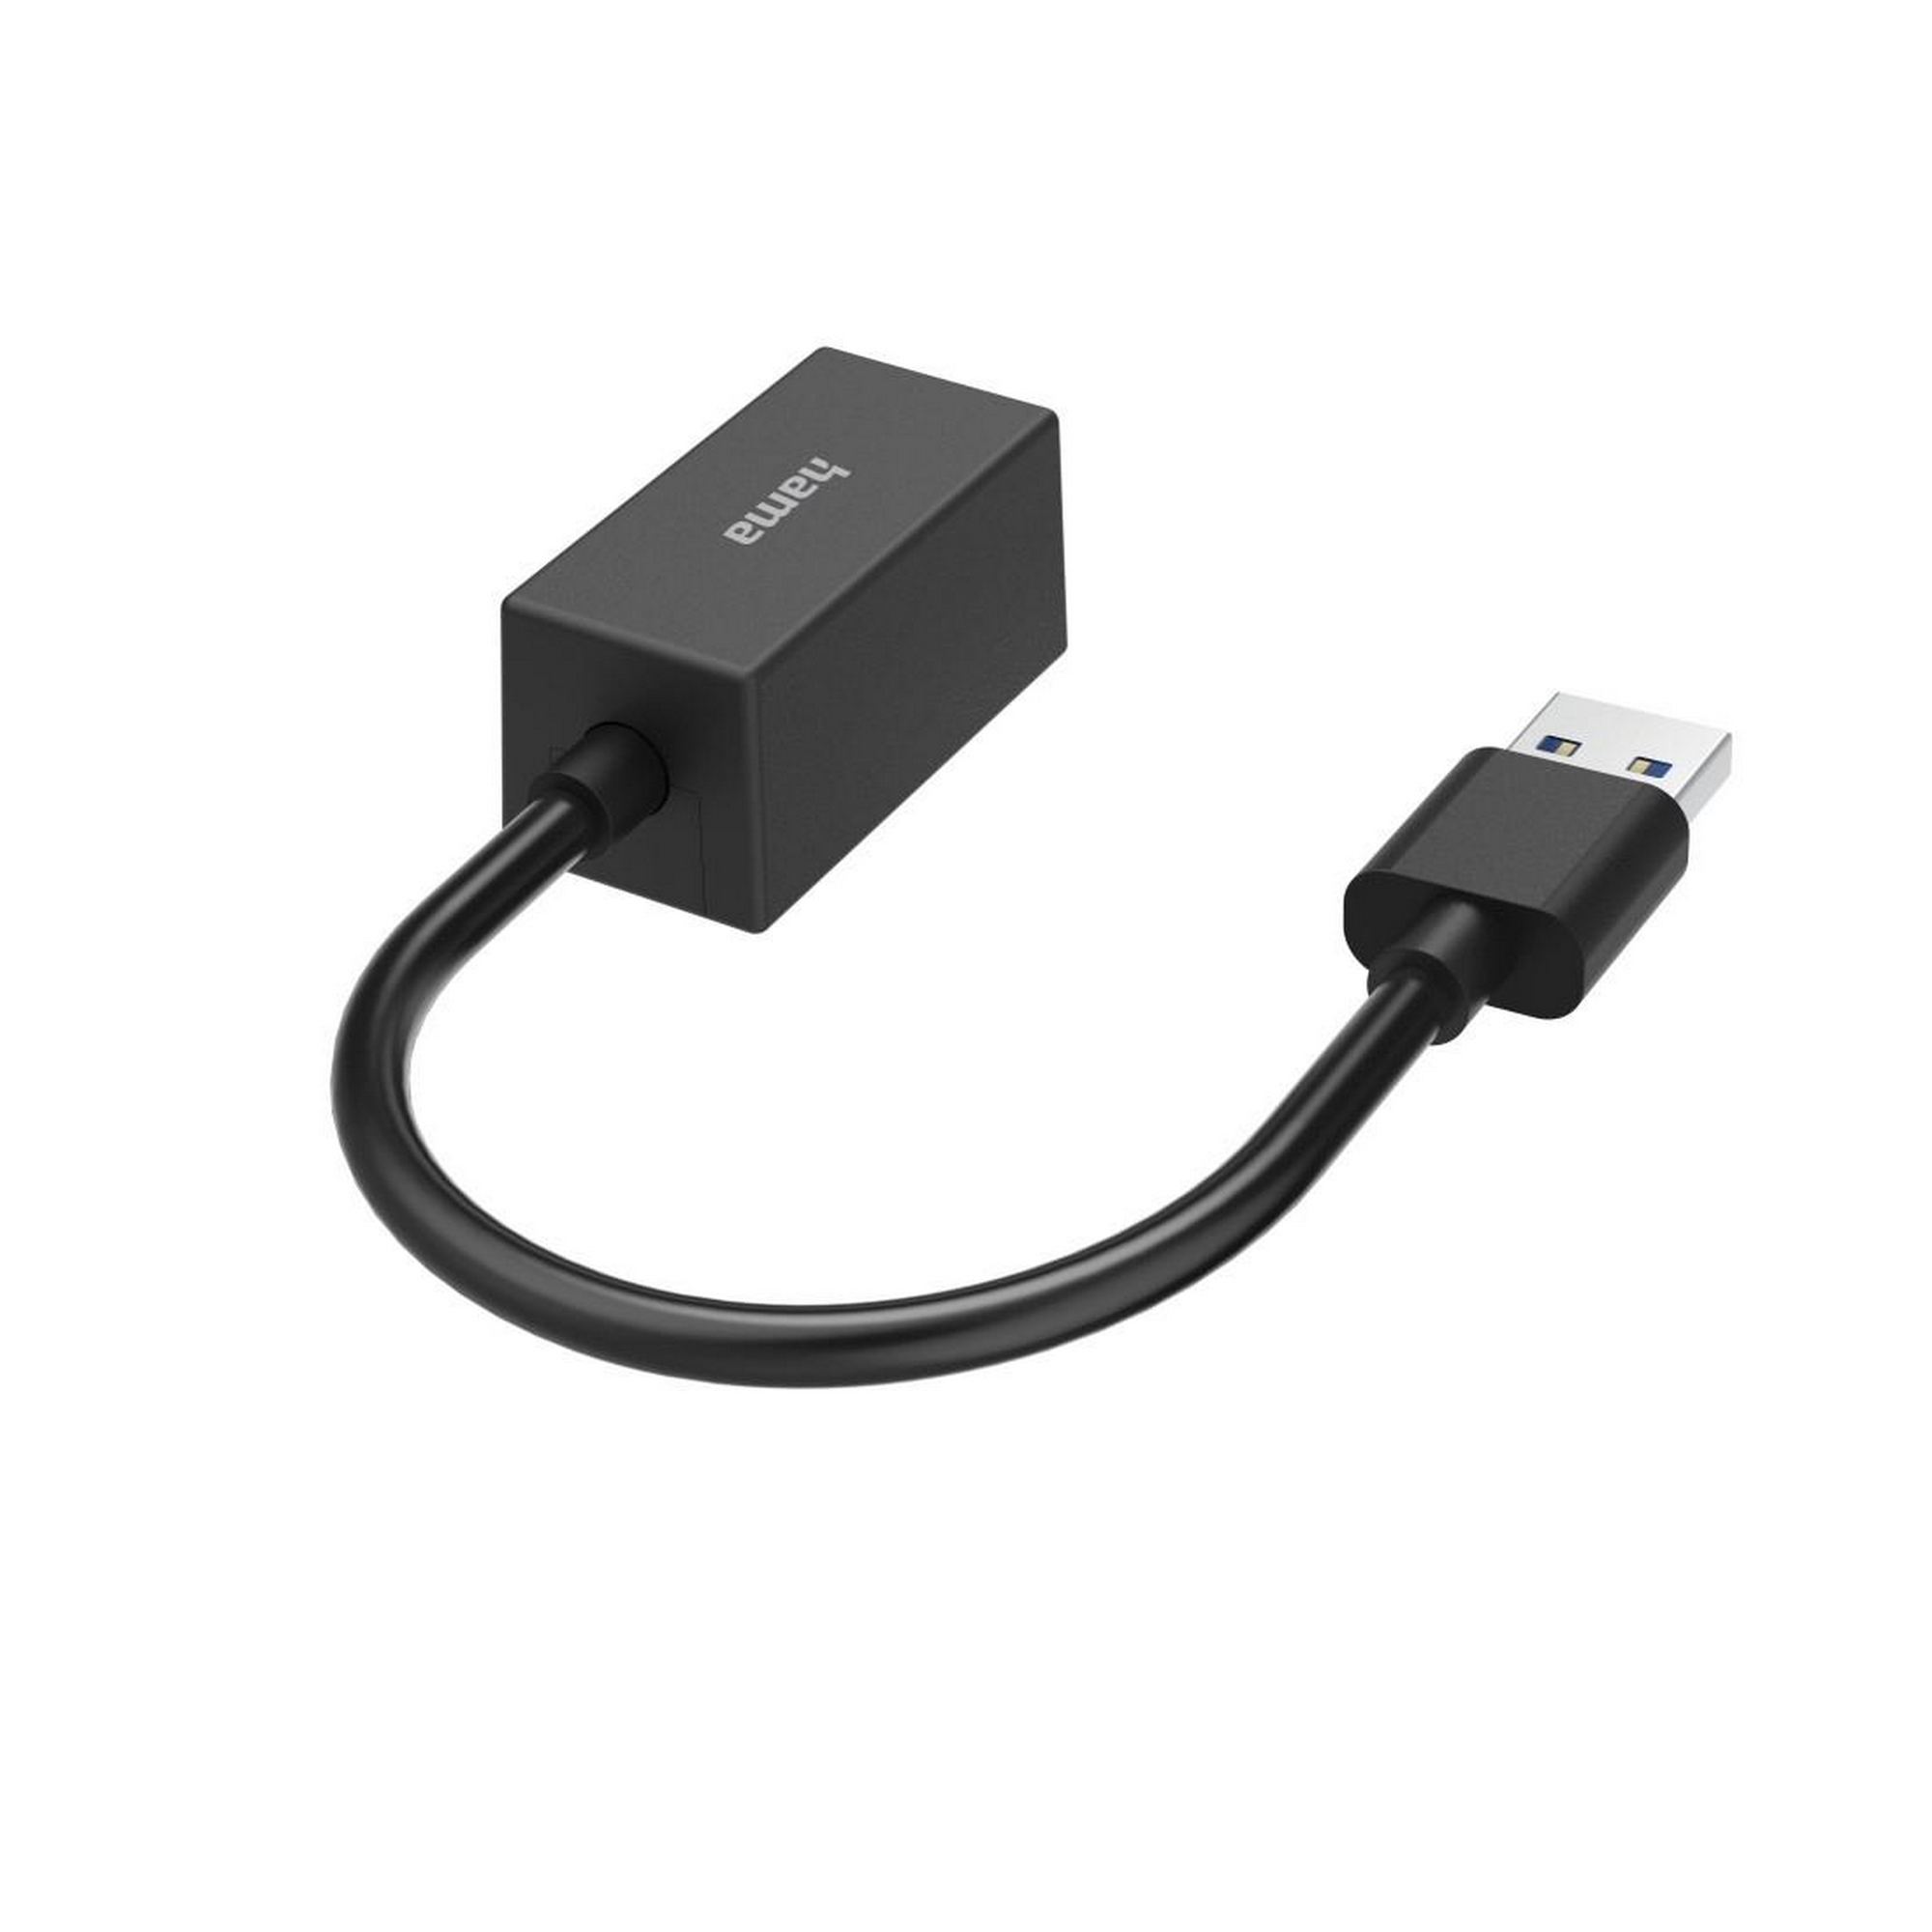 Netzwerkadapter USB-Stecker mit LAN-Ethernet-Buchse + product picture